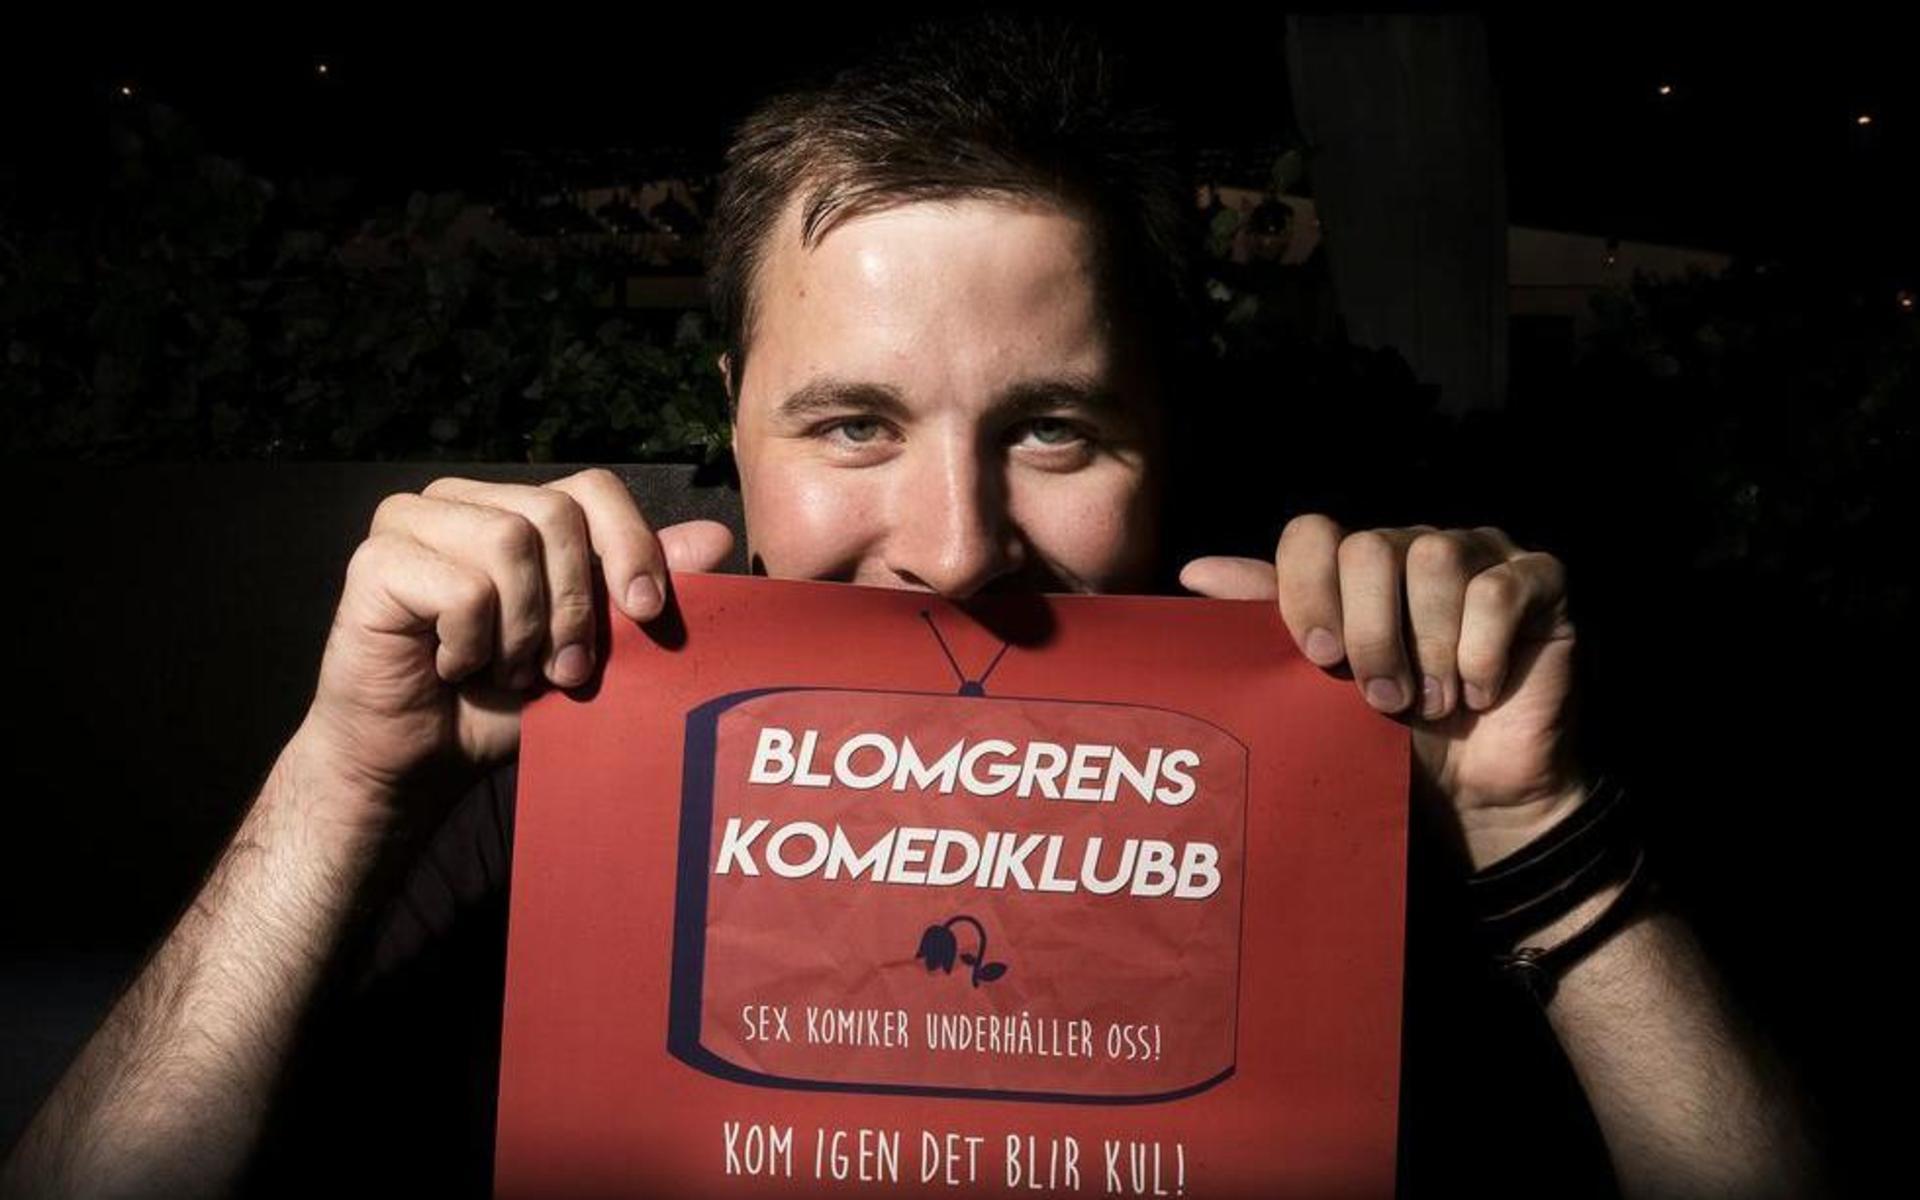 Klubbarrangör. Marcus Blomgren brinner för att det ska finnas roliga grejer i Uddevalla. Han startade Blomgrens Komediklubb för ett år sedan.